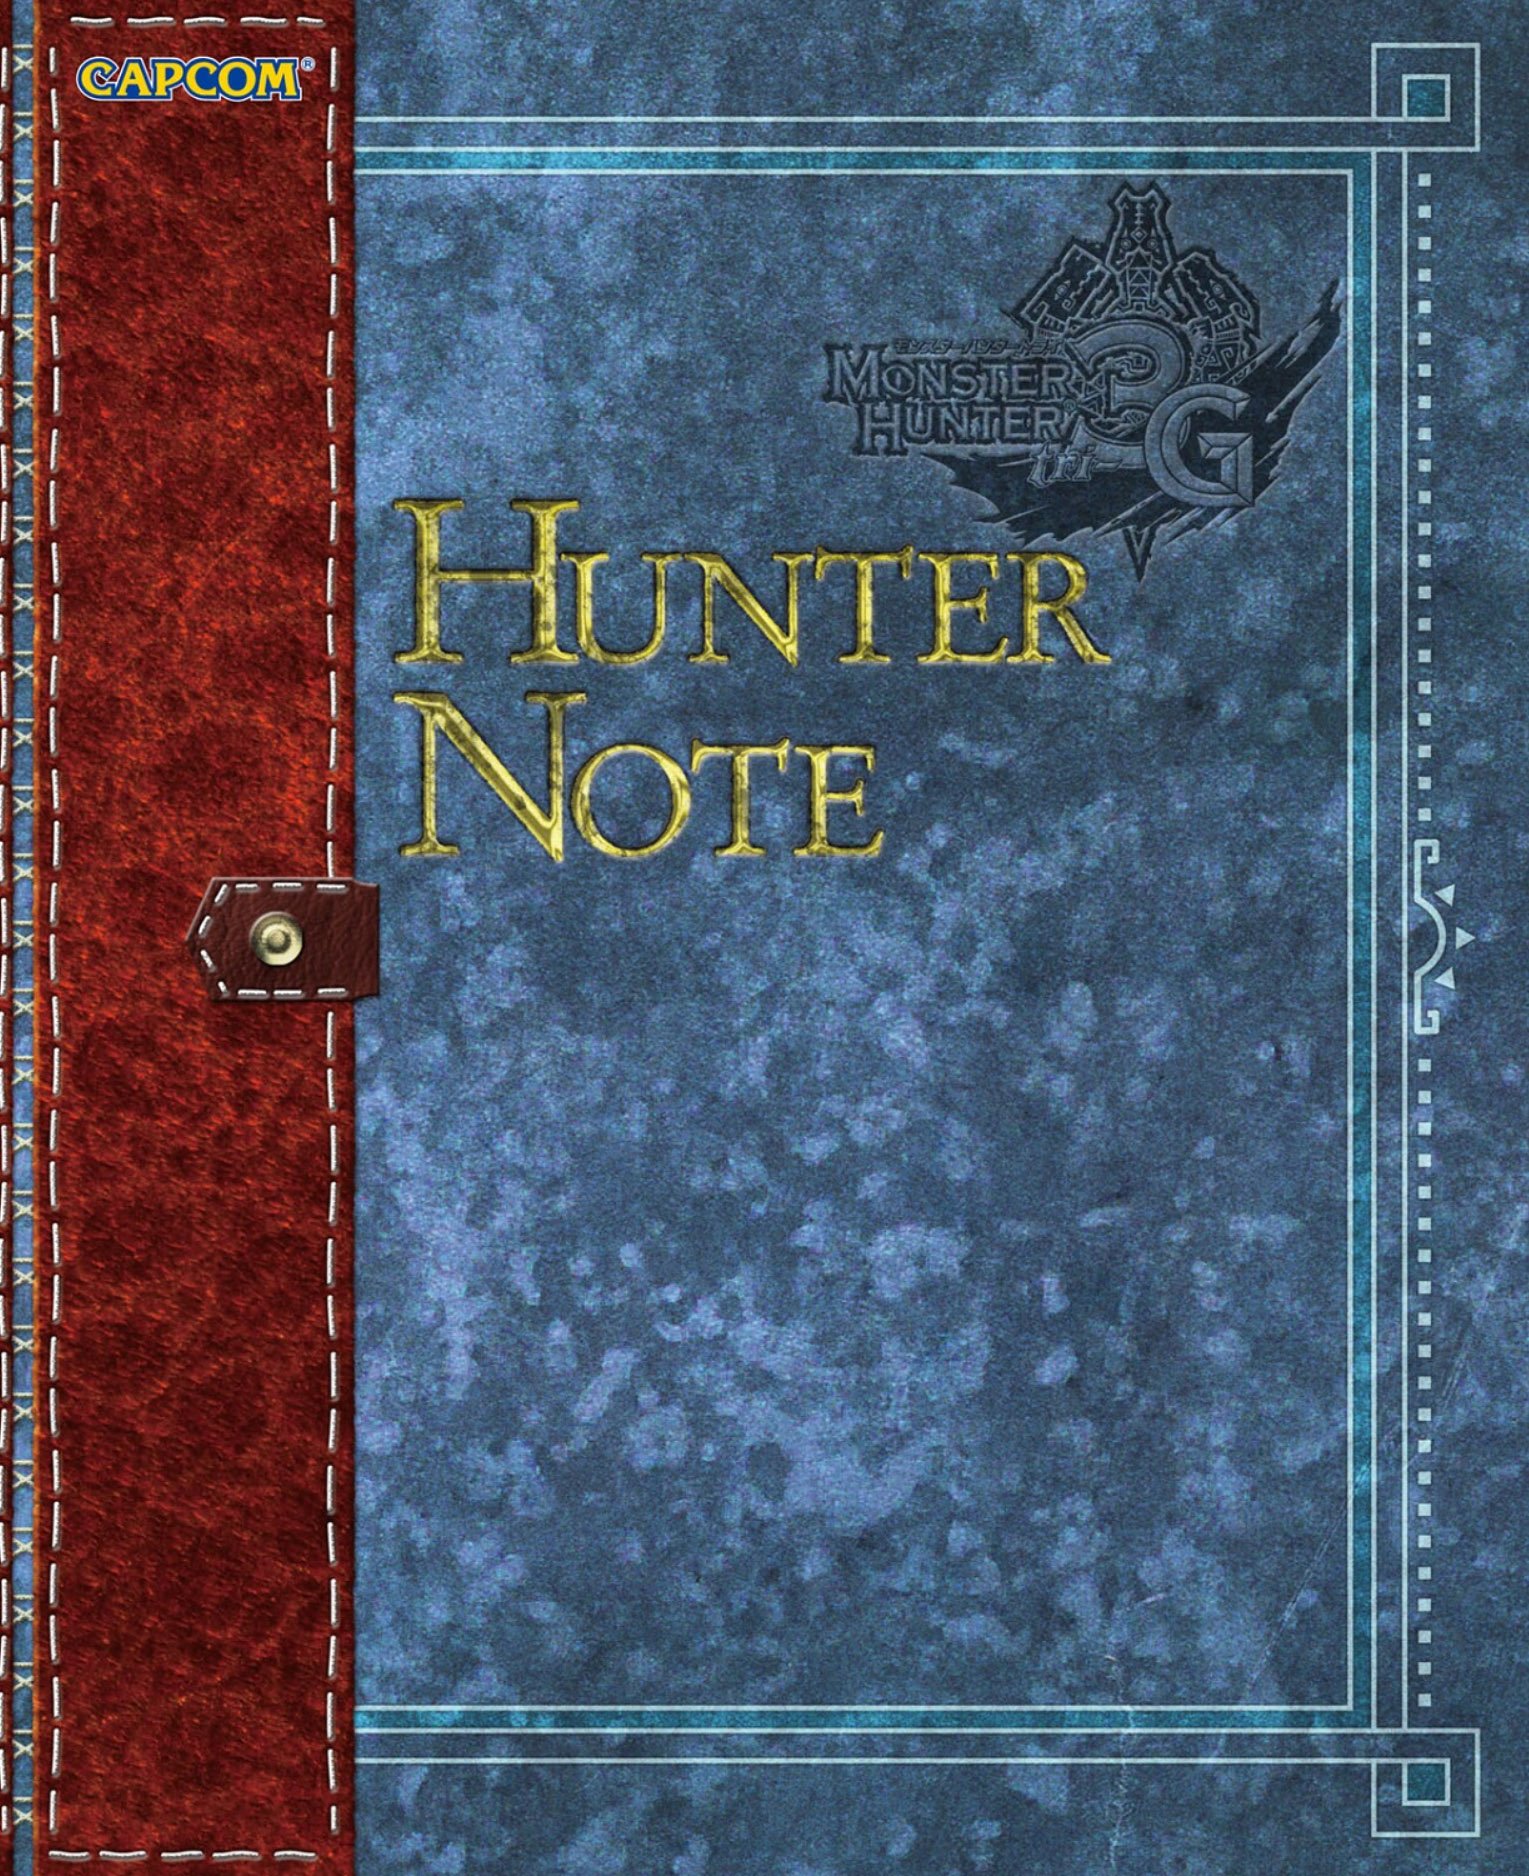 Monster Hunter 3G - Hunter Note